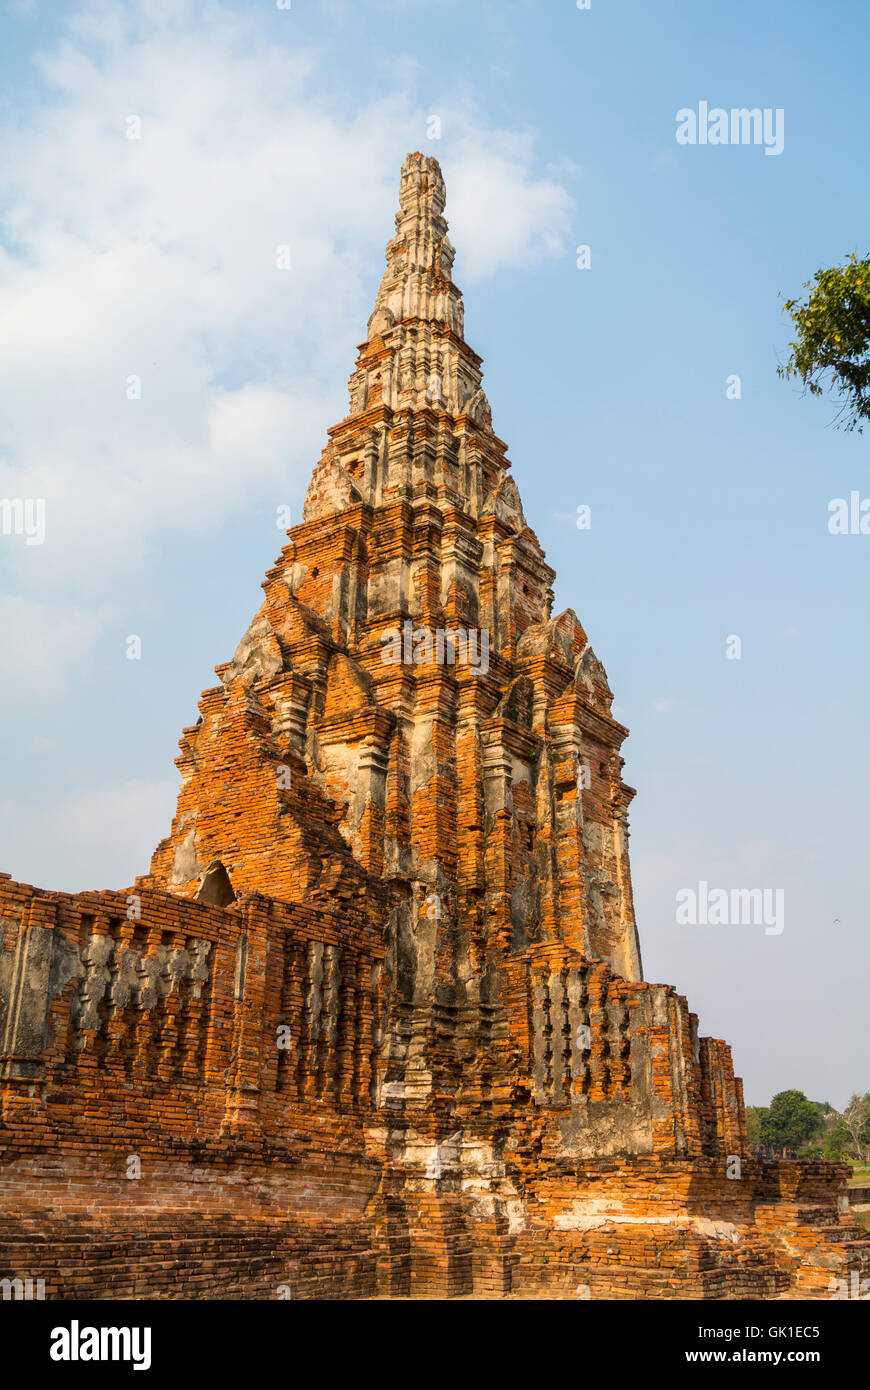 Wat Chaiwatthanaram Ayutthaya Thailand Stock Photo